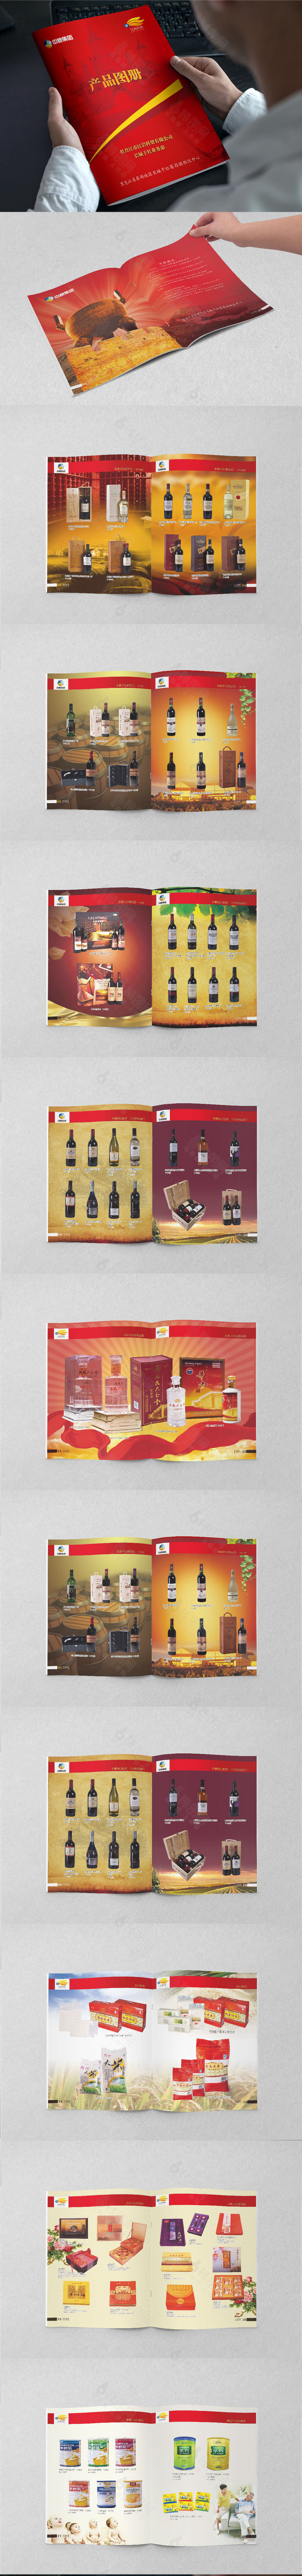 精品红酒宣传画册